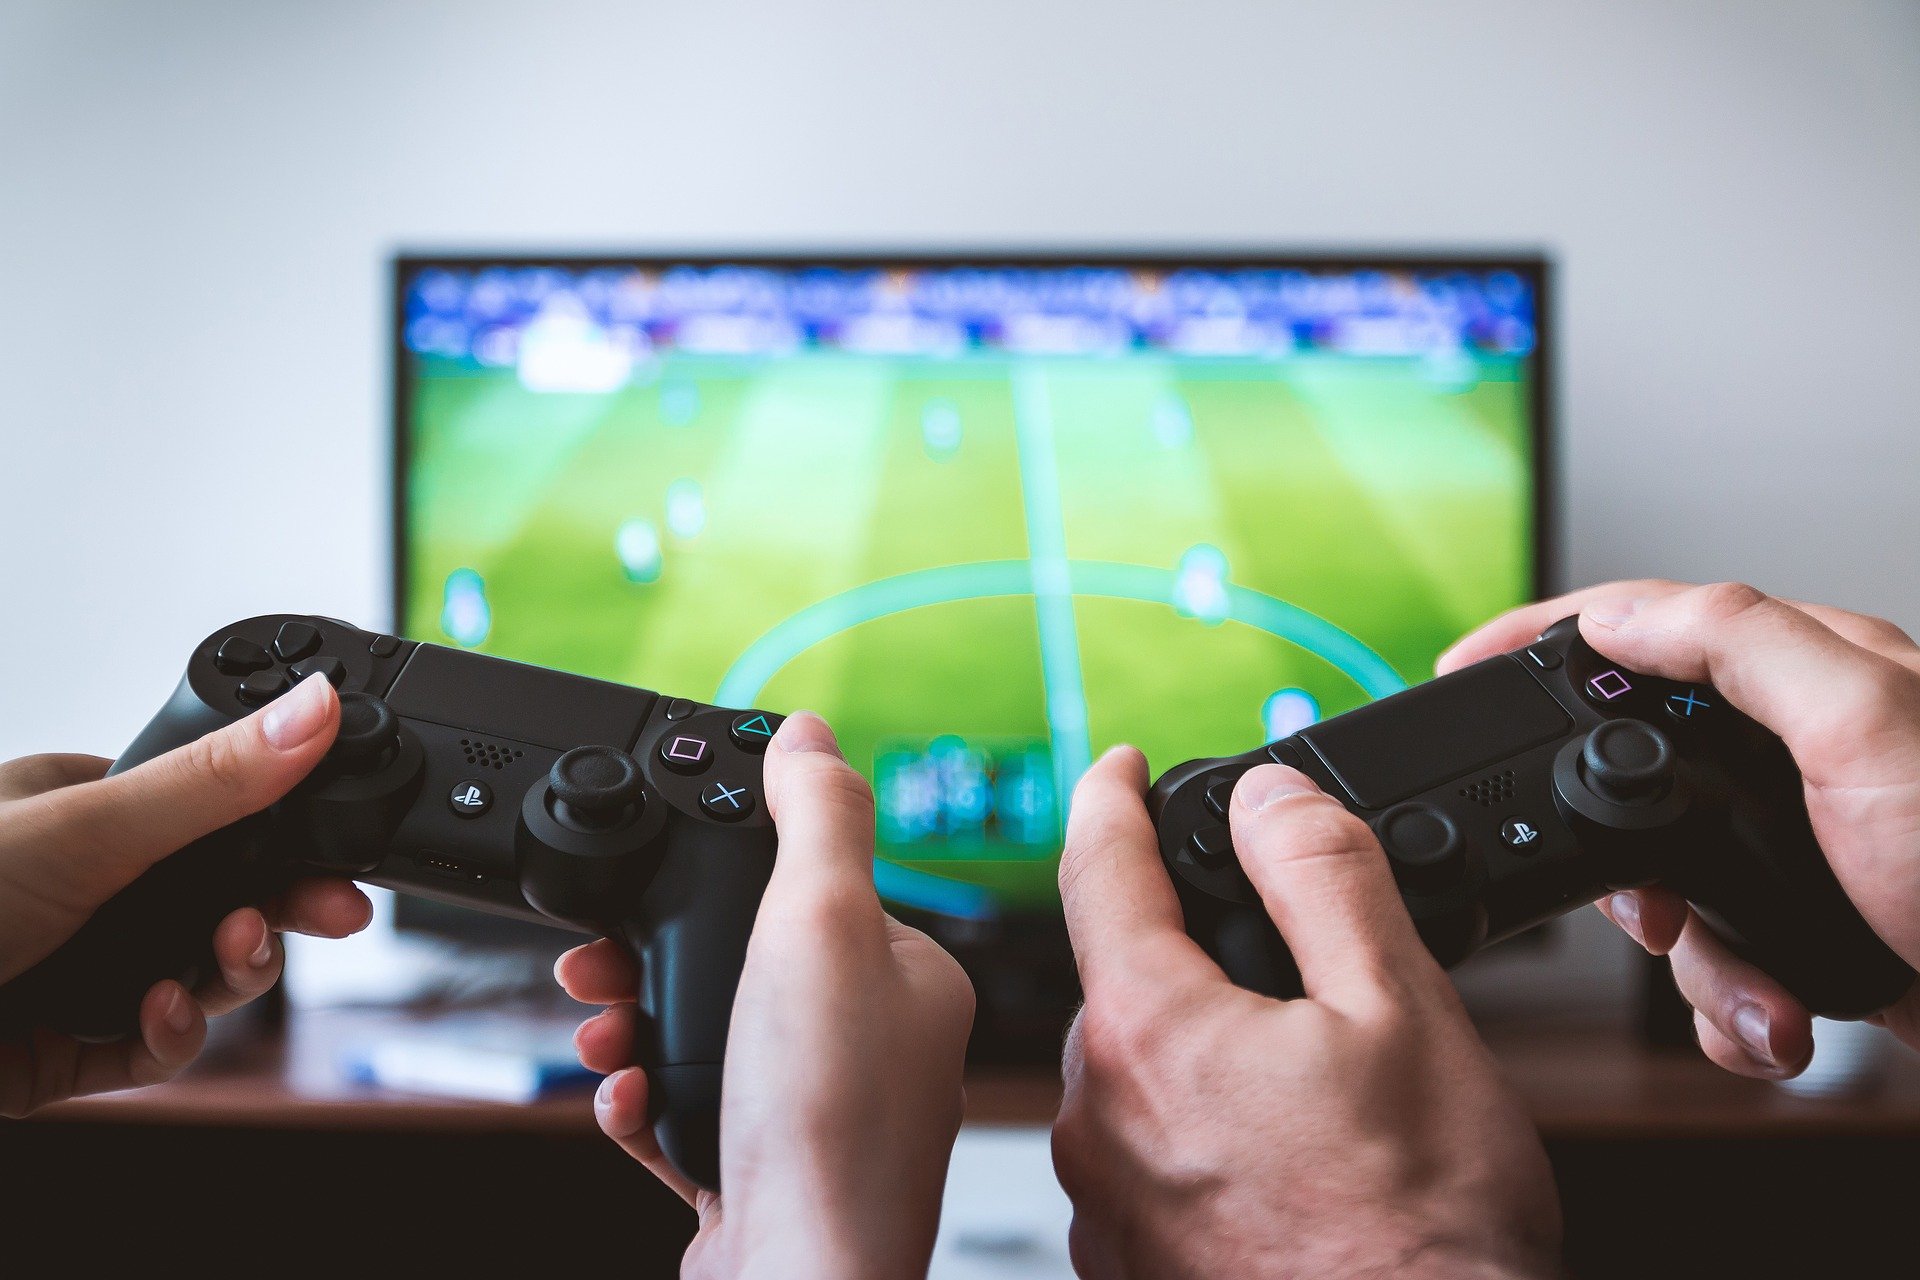 Es sind die Hände zweier Spieler zu sehen, die jeweils einen Controller halten und im Hintergrund befindet sich ein Fernseher mit FIFA